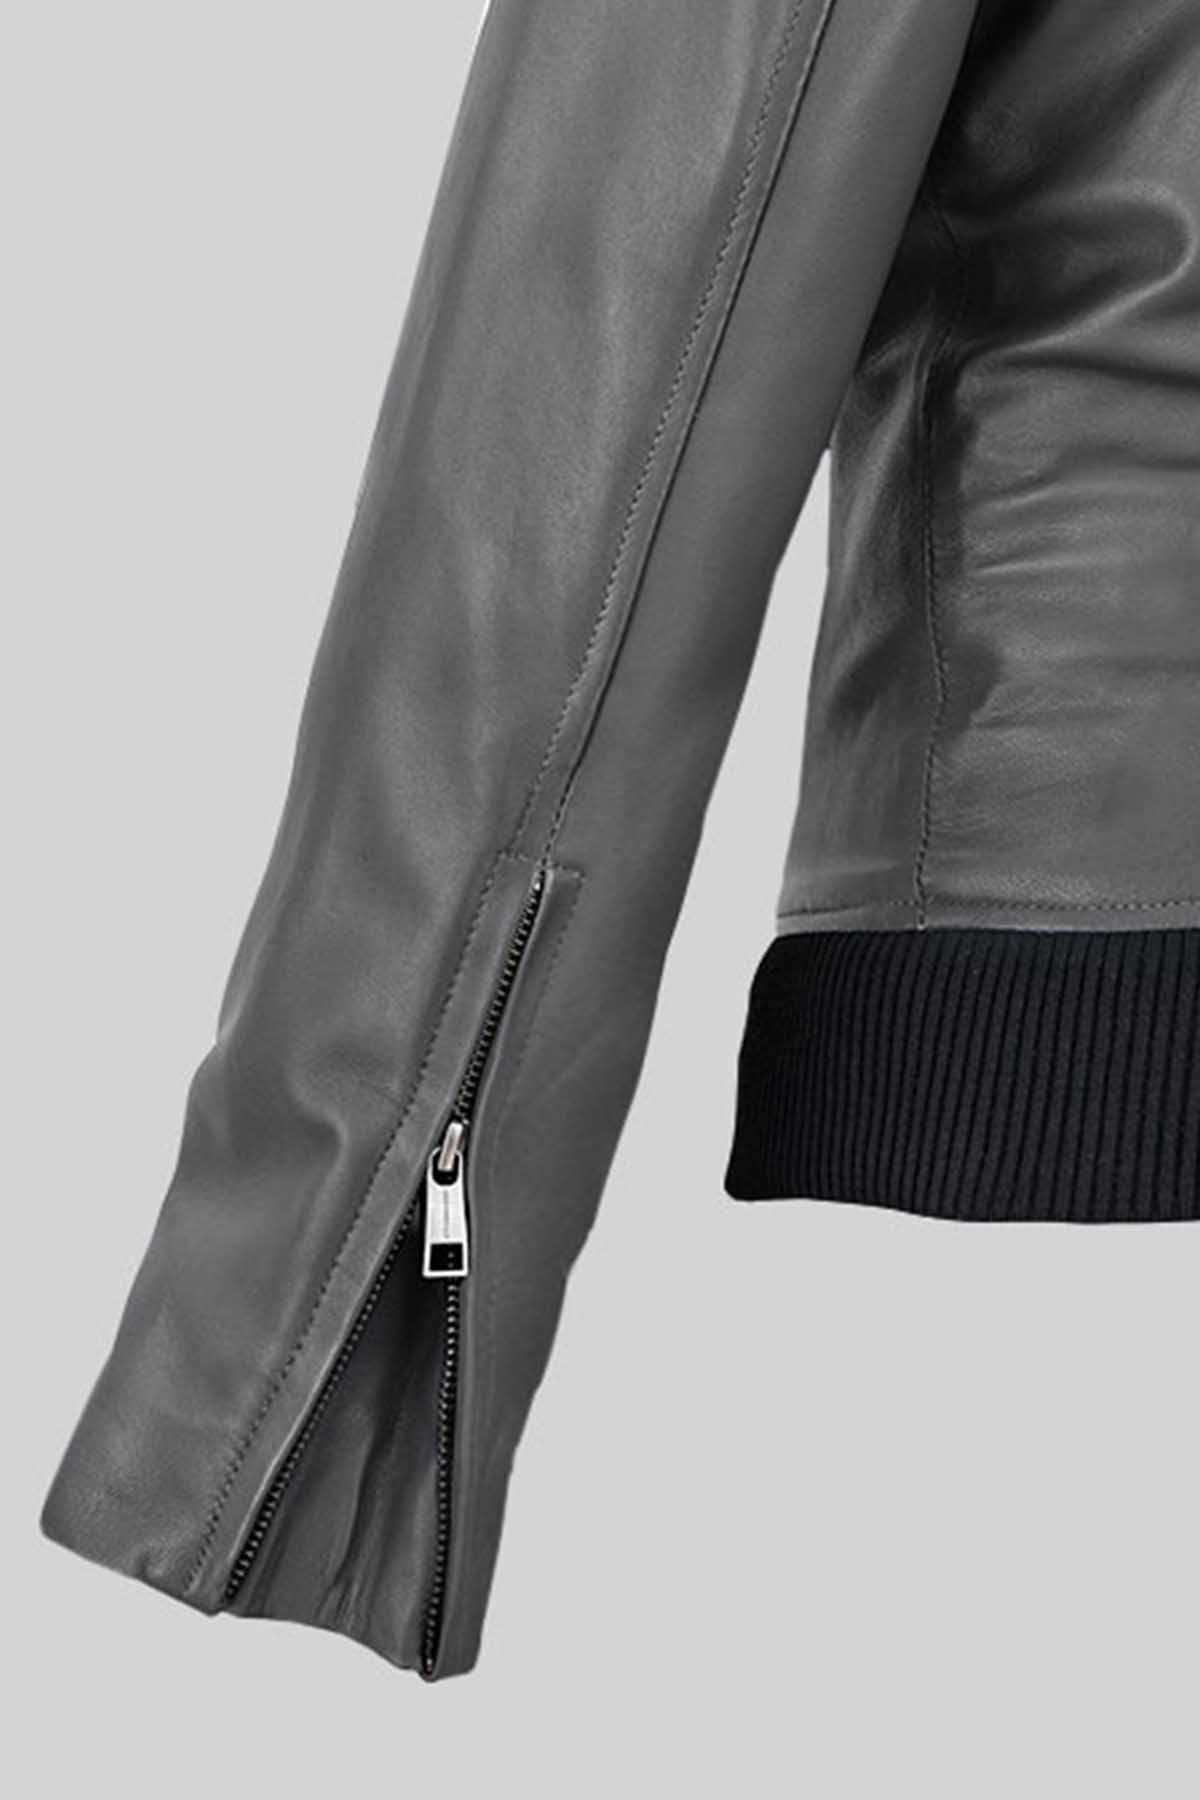 Classic Jennifer Aniston Leather Jacket – Bomber Jacket